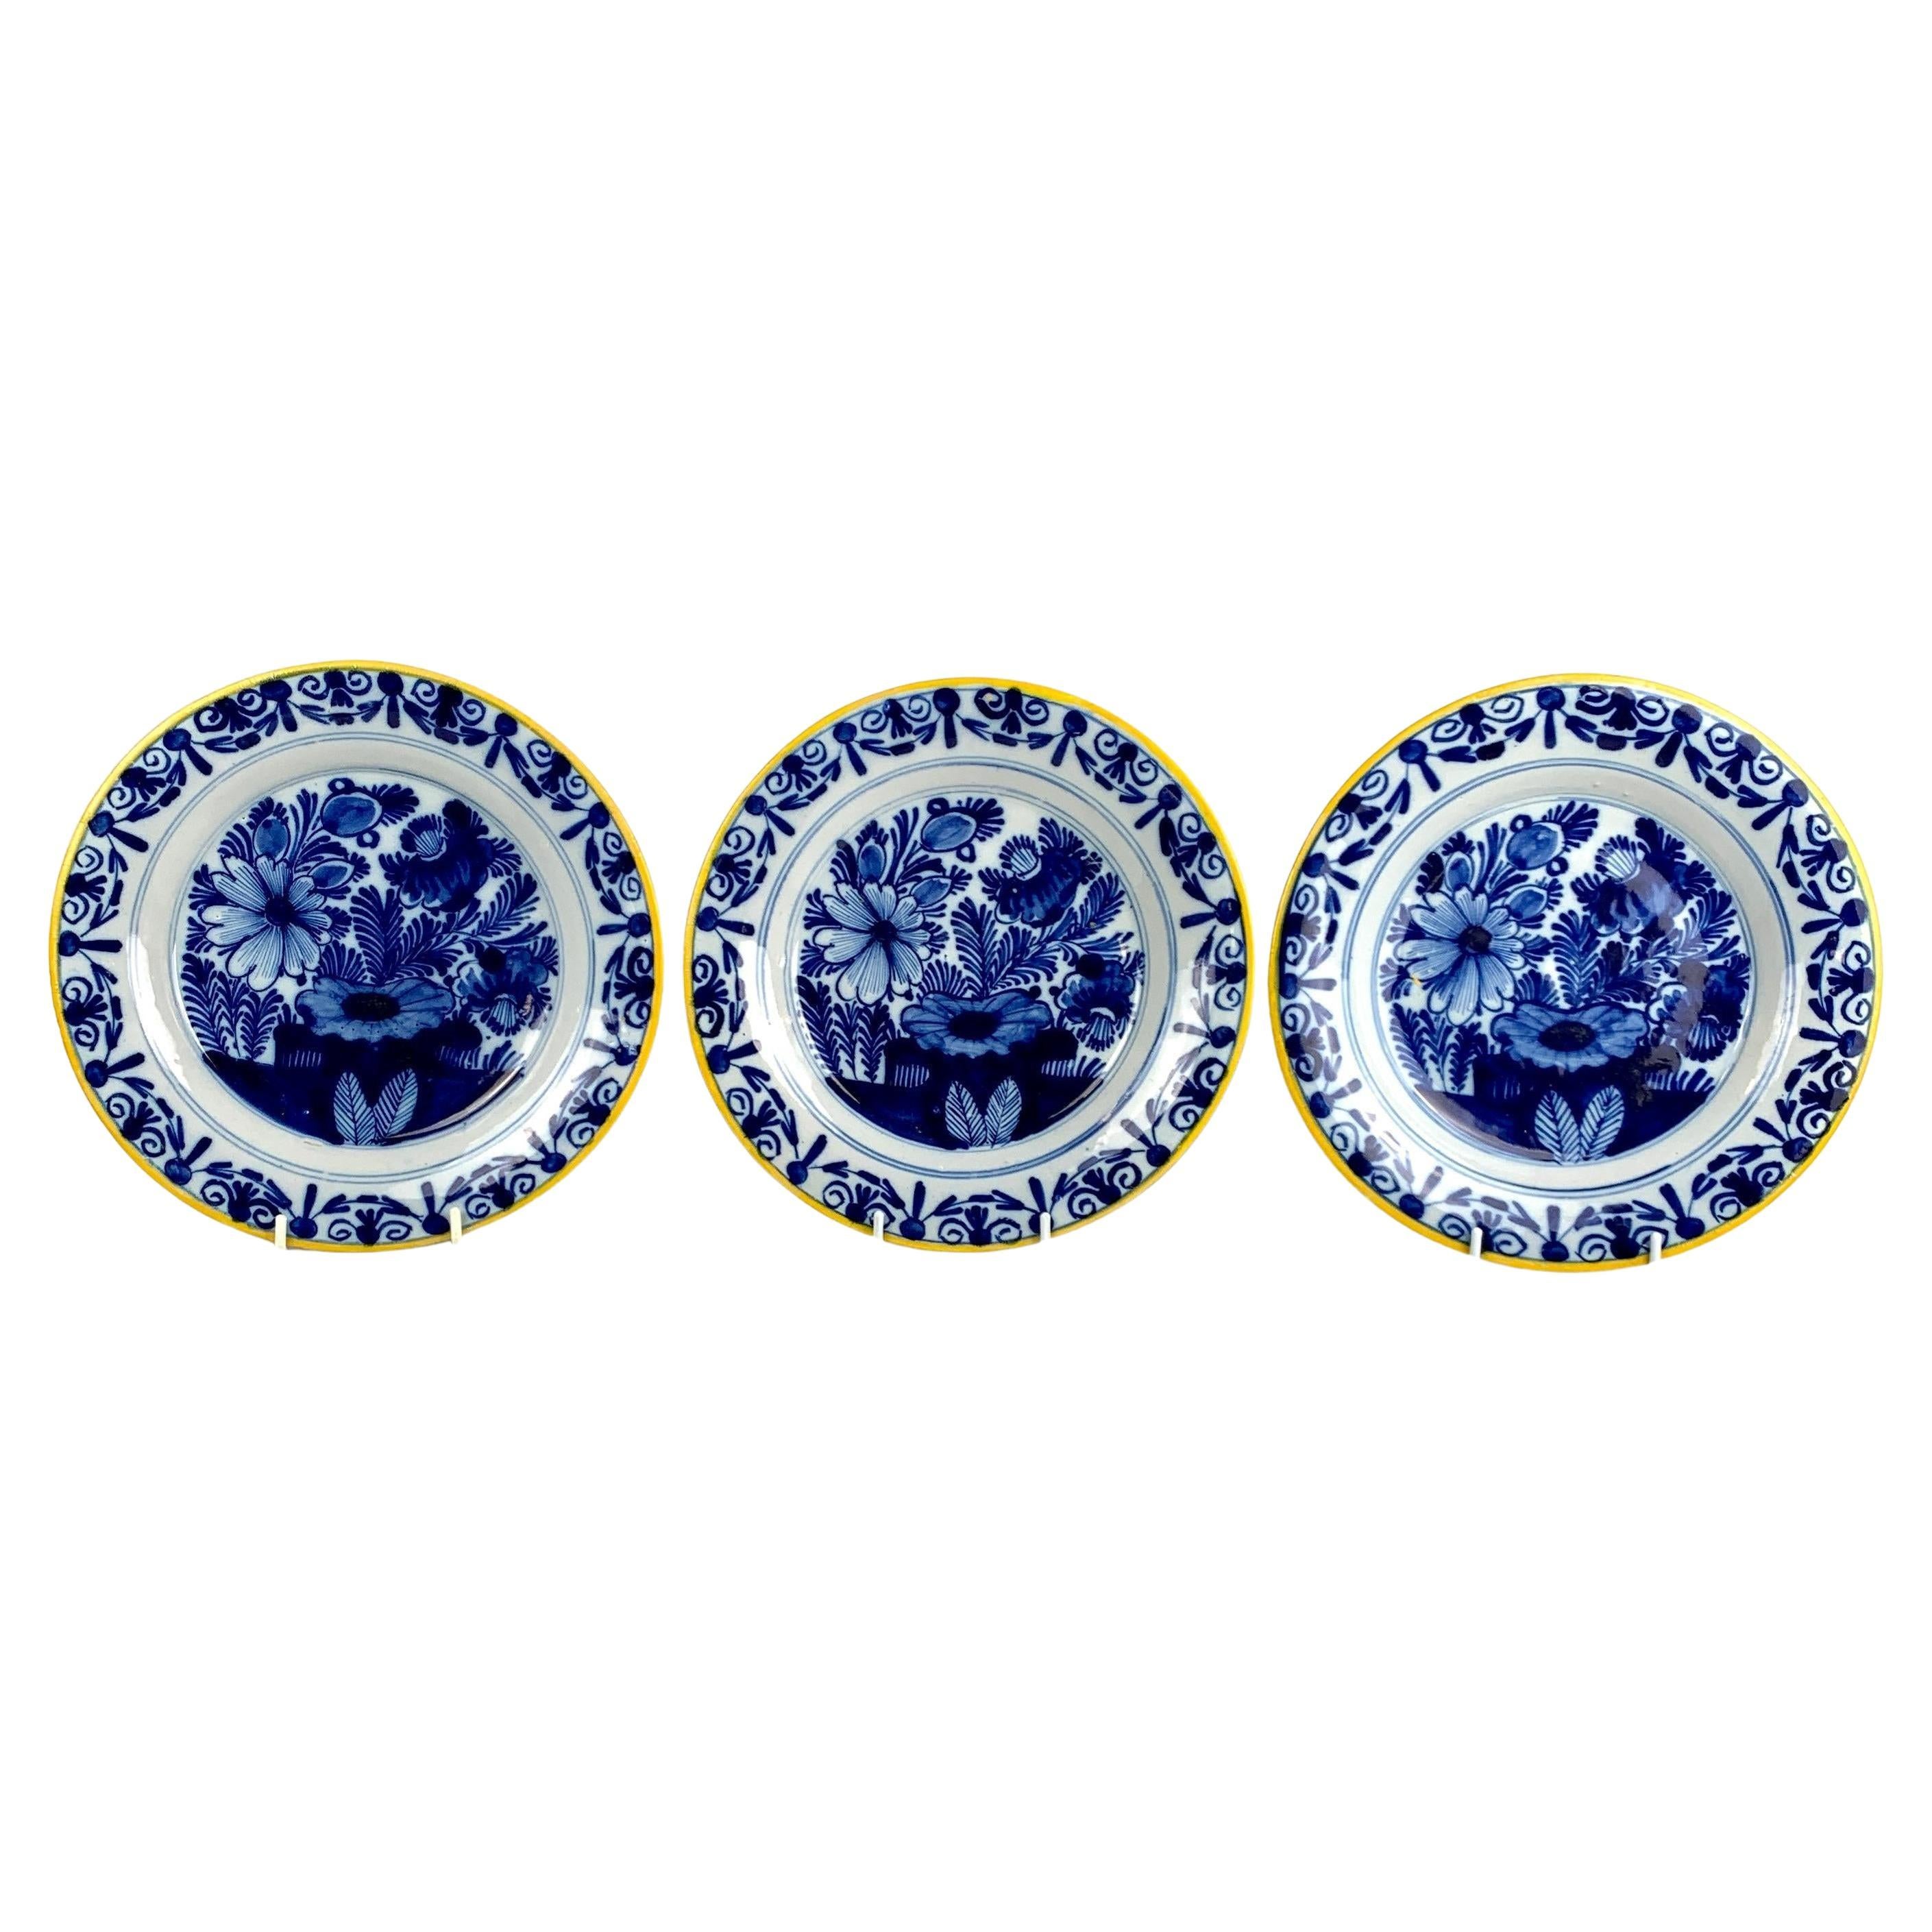 Drei blau-weiße Delfter Teller, handbemalt, 18. Jahrhundert, Niederlande